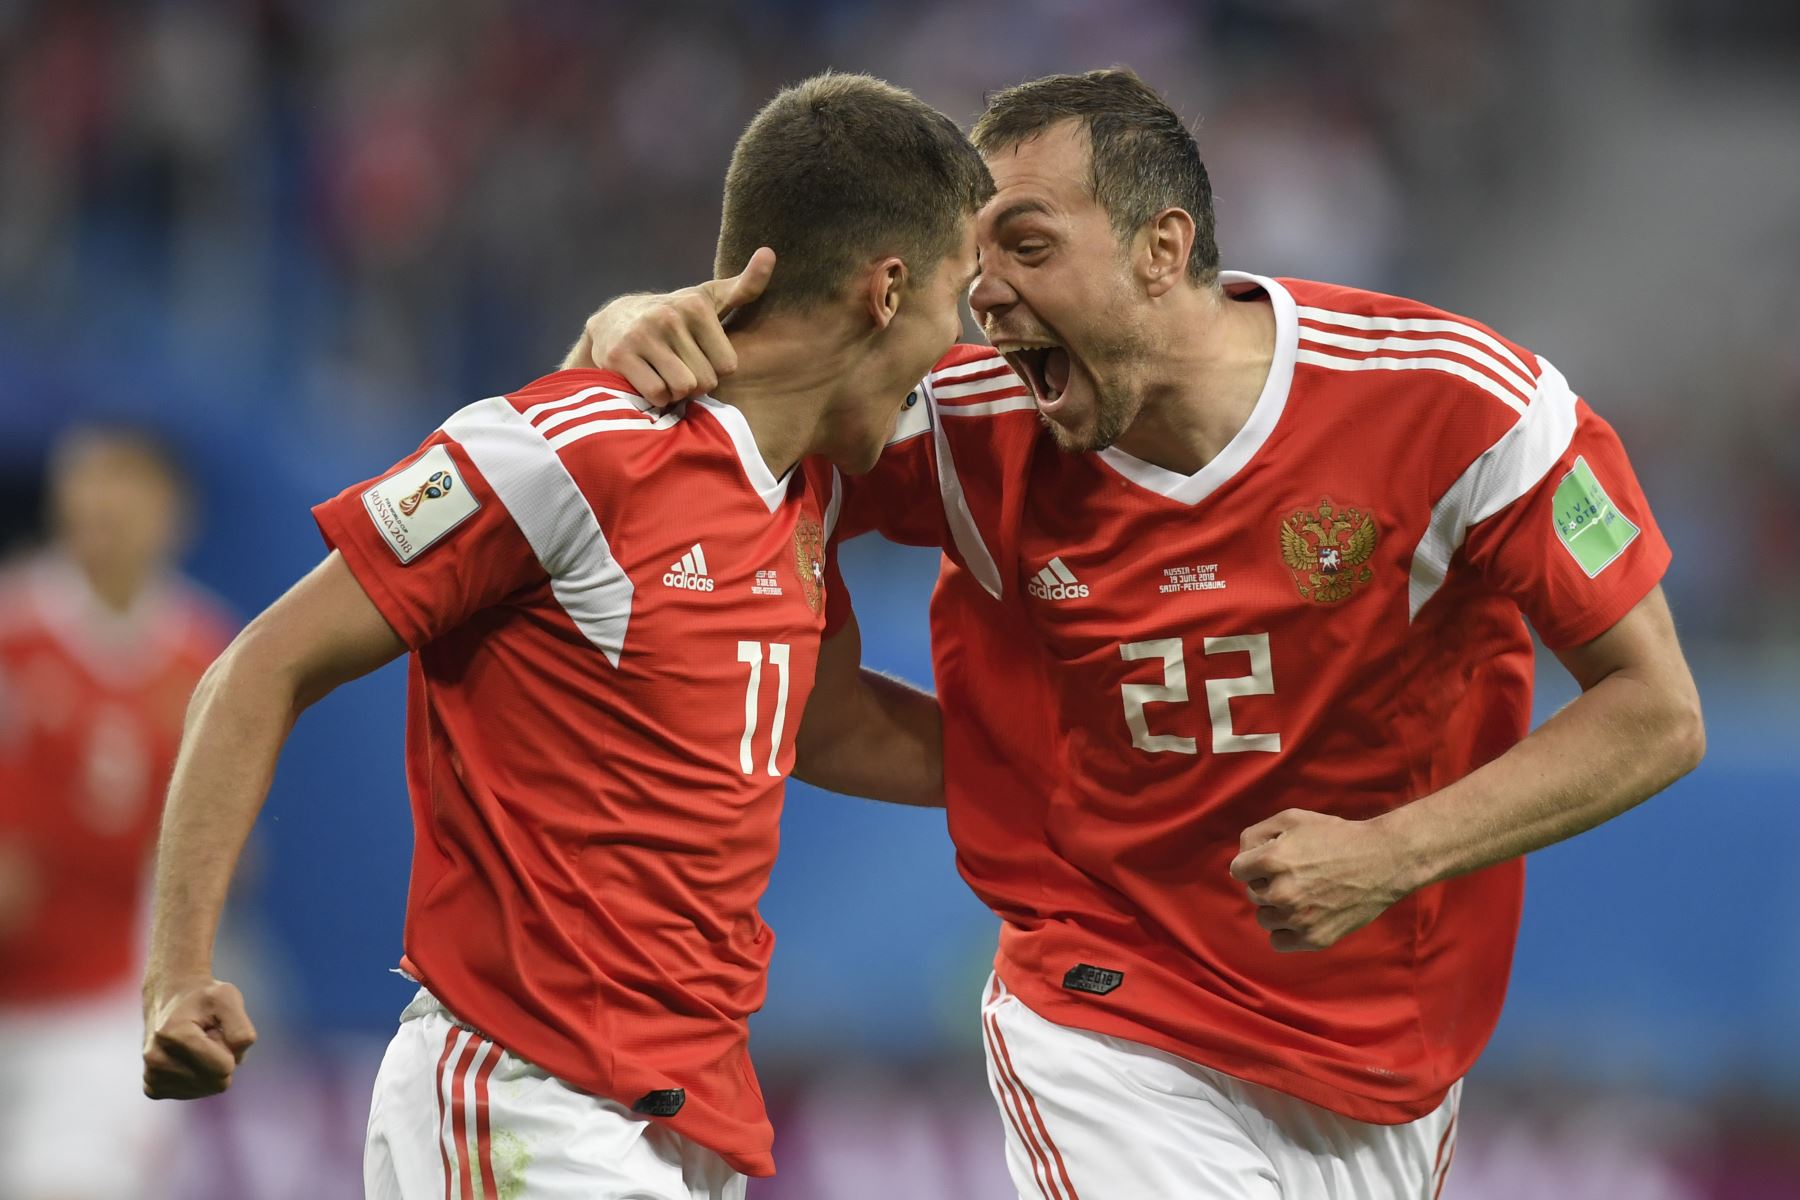 El delantero ruso Artem Dzyuba y el portero egipcio Sherif Ekramy celebran el gol de apertura durante el partido de fútbol Rusia A del Grupo A de la Copa Mundial 2018 entre Rusia y Egipto en el estadio de San Petersburgo el 19 de junio de 2018. / AFP